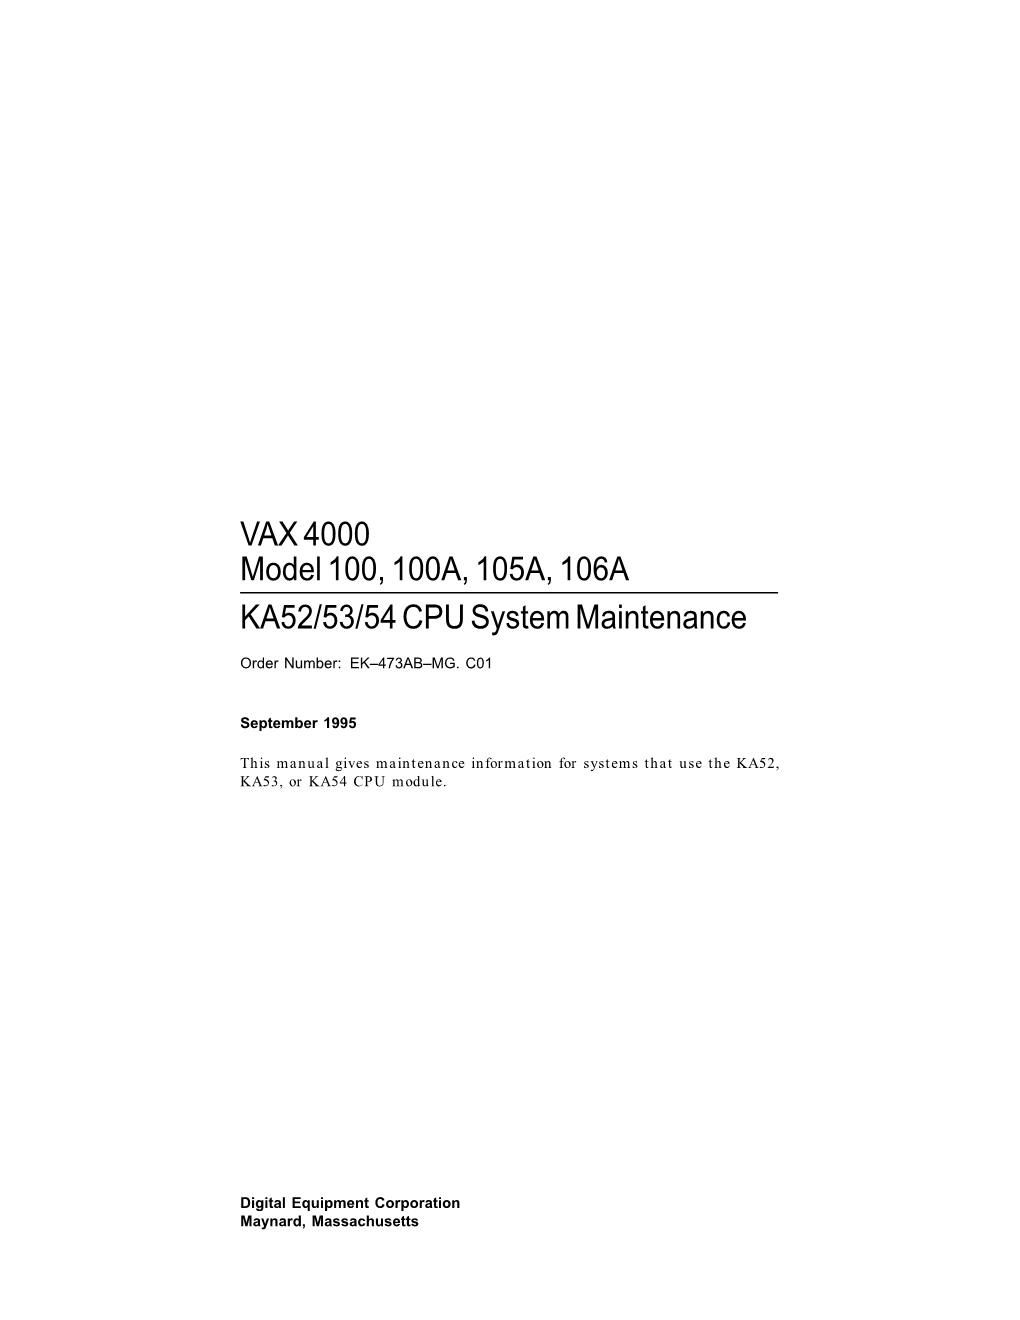 VAX 4000 Model 100100A,105A,106A KA52/53/54